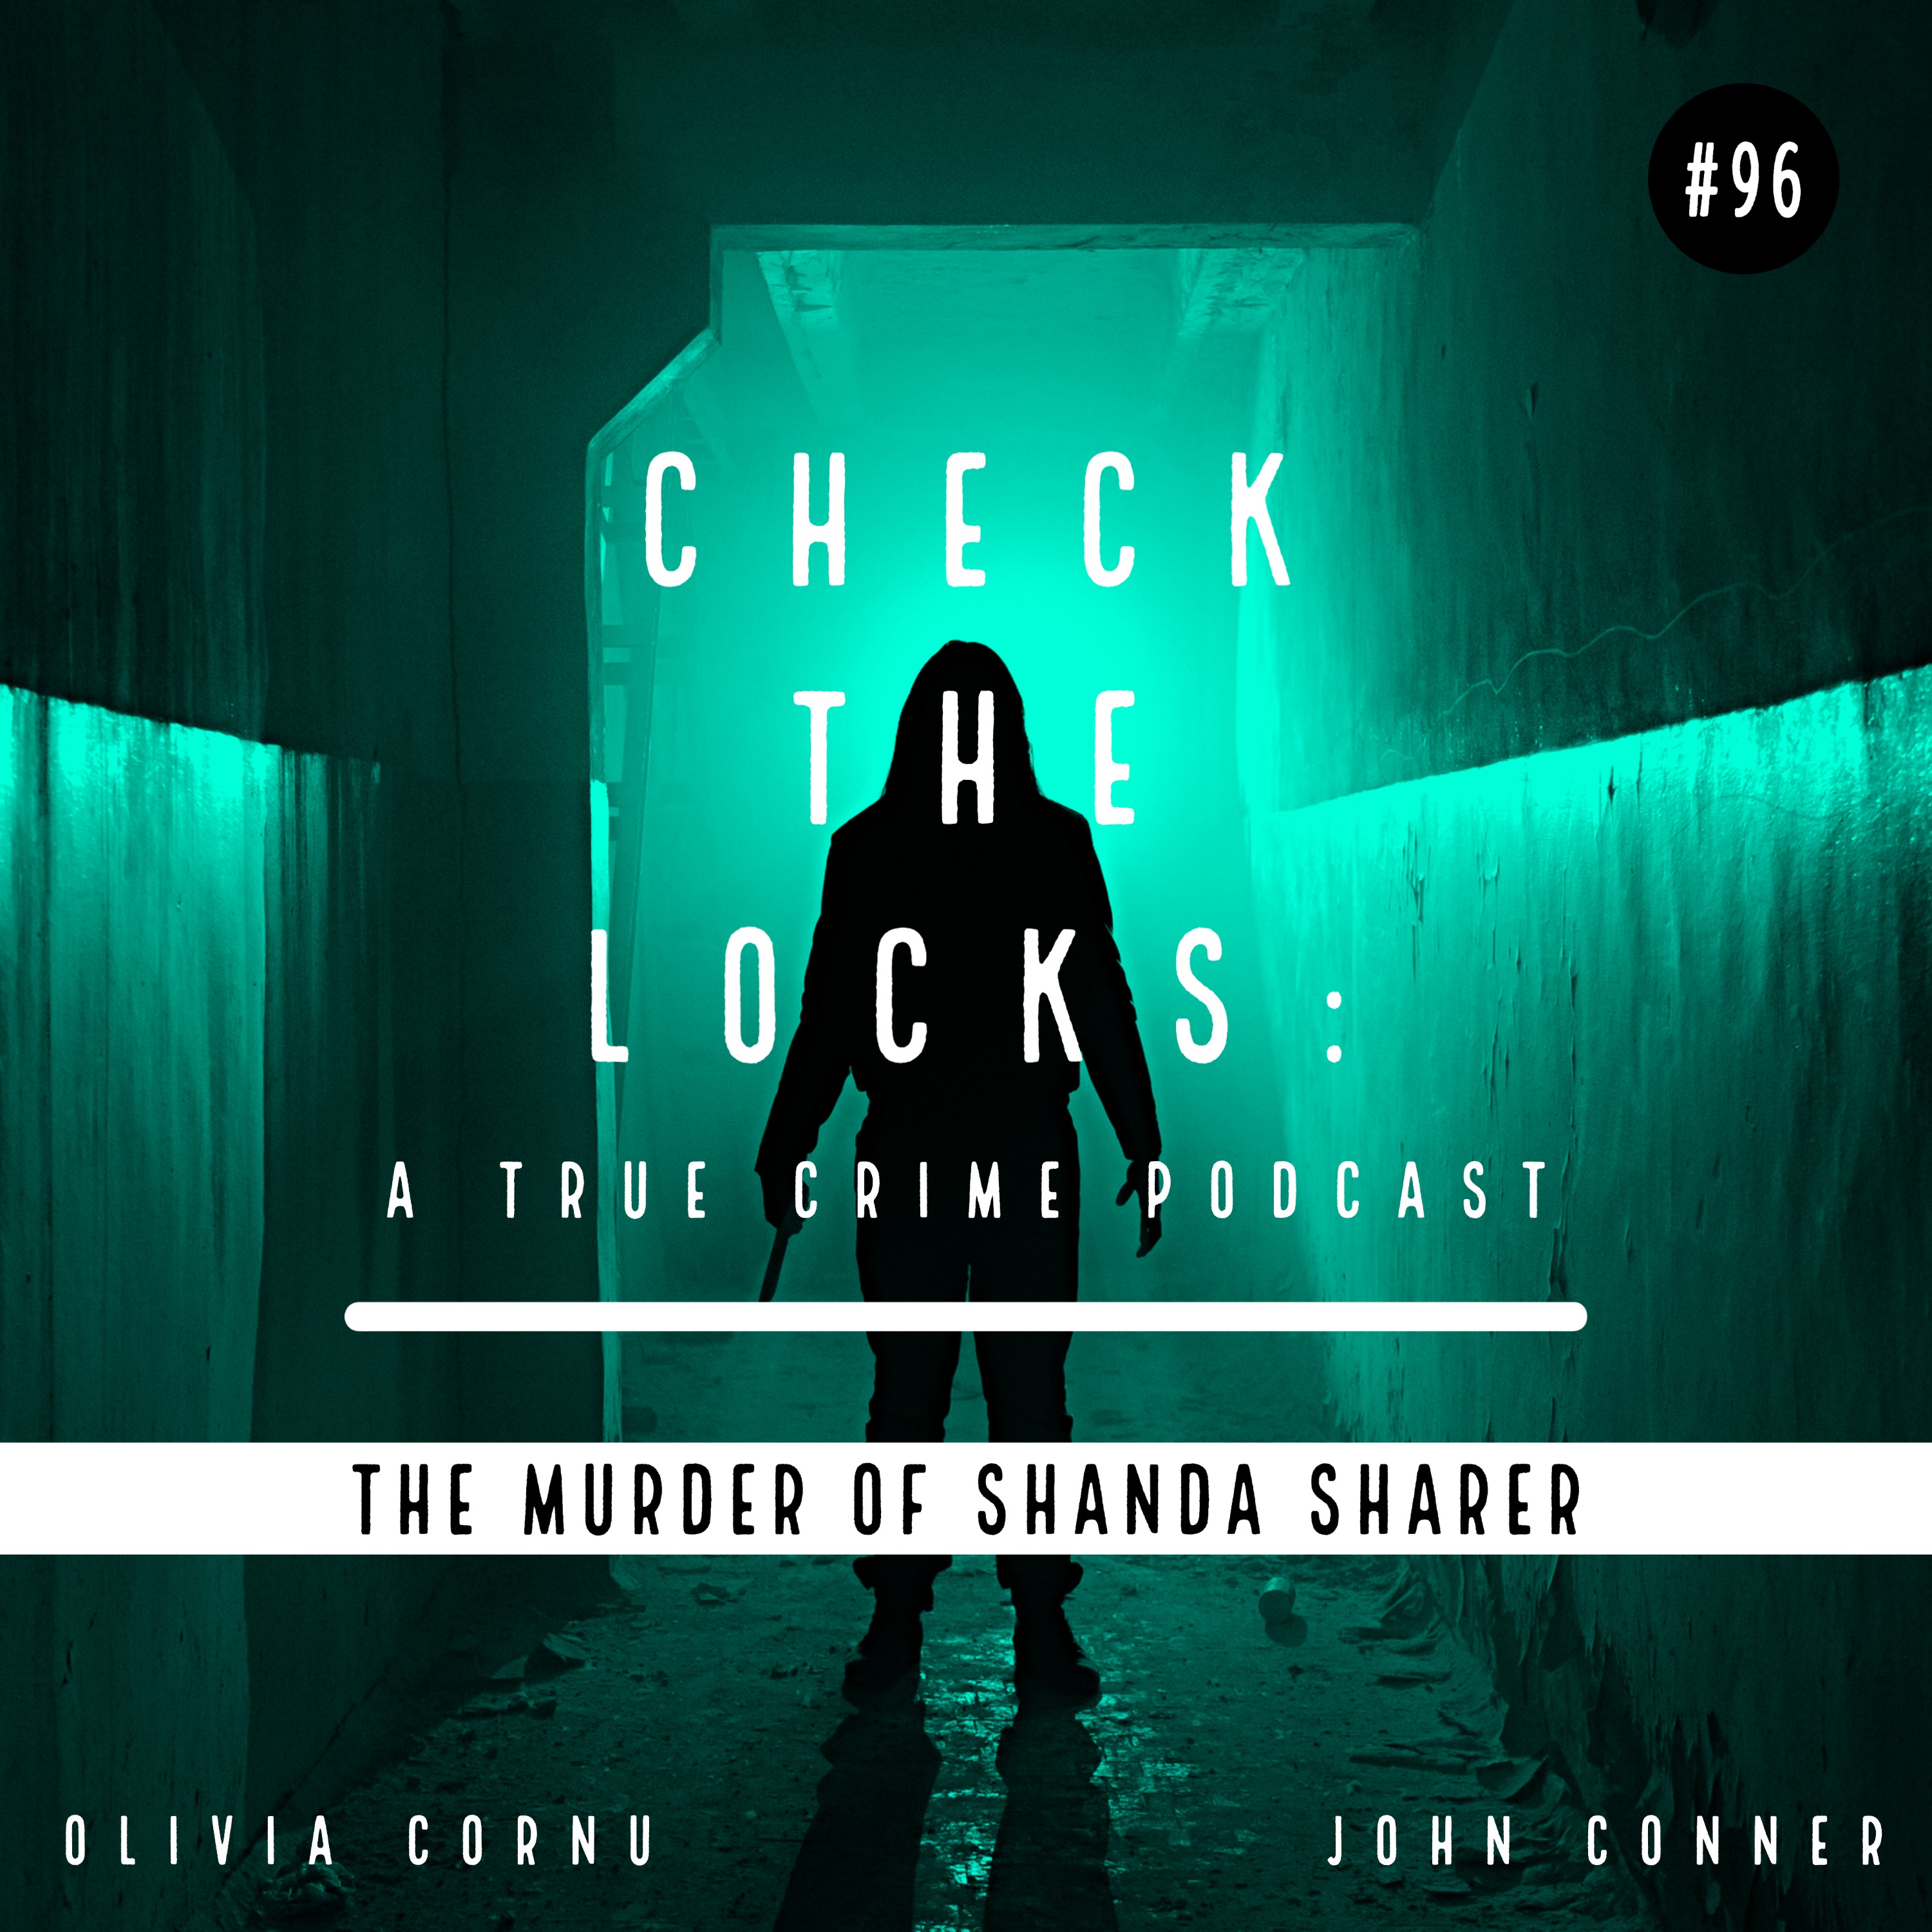 The Murder of Shanda Sharer